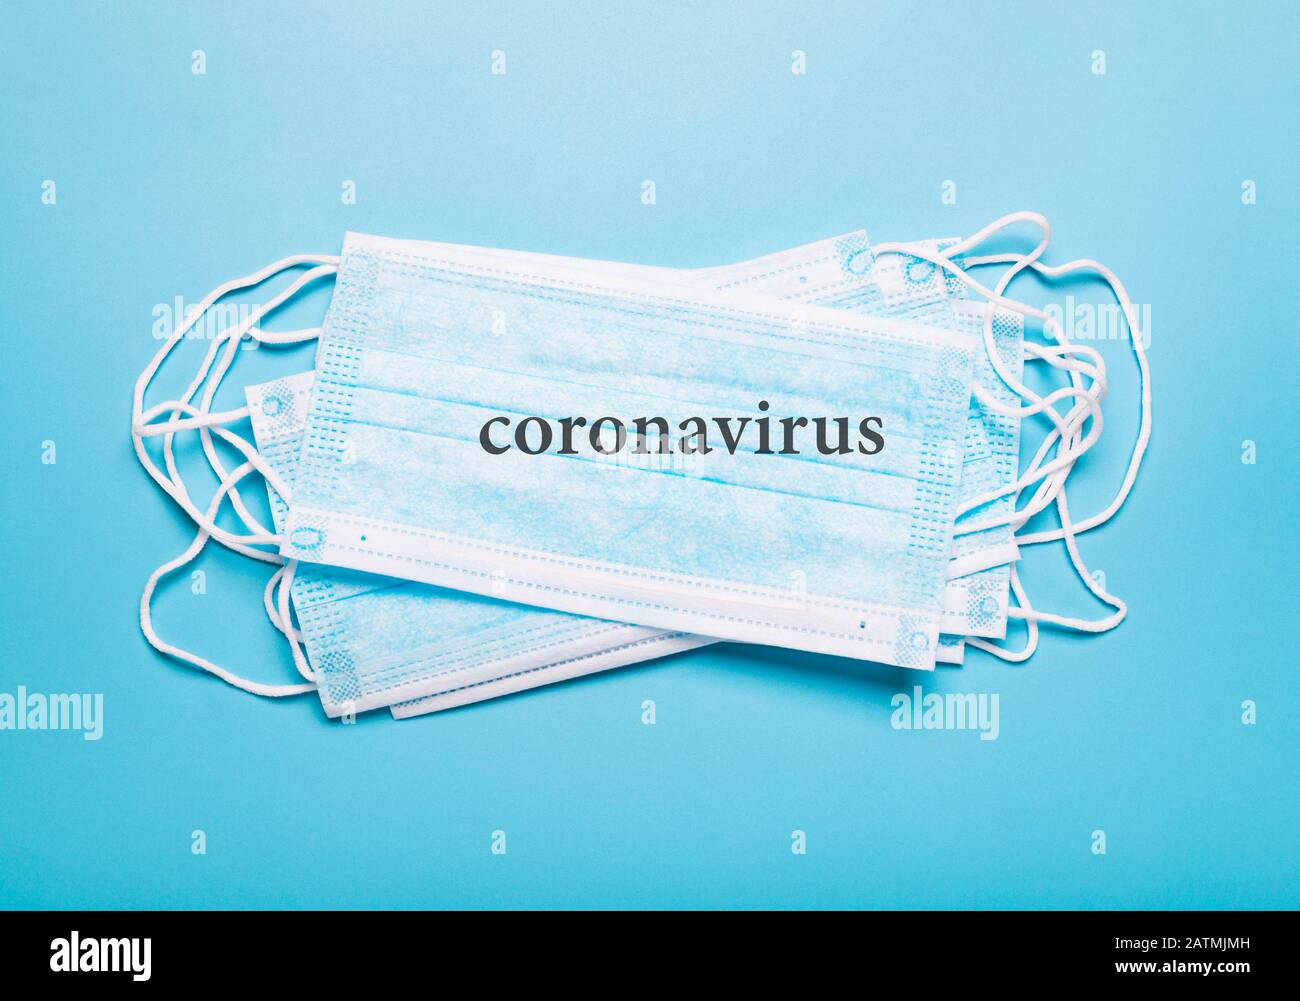 Nouveau coronavirus - 2019 nCoV.masque médical pour la protection contre l'infection. Concept de coronavirus, grippe Banque D'Images